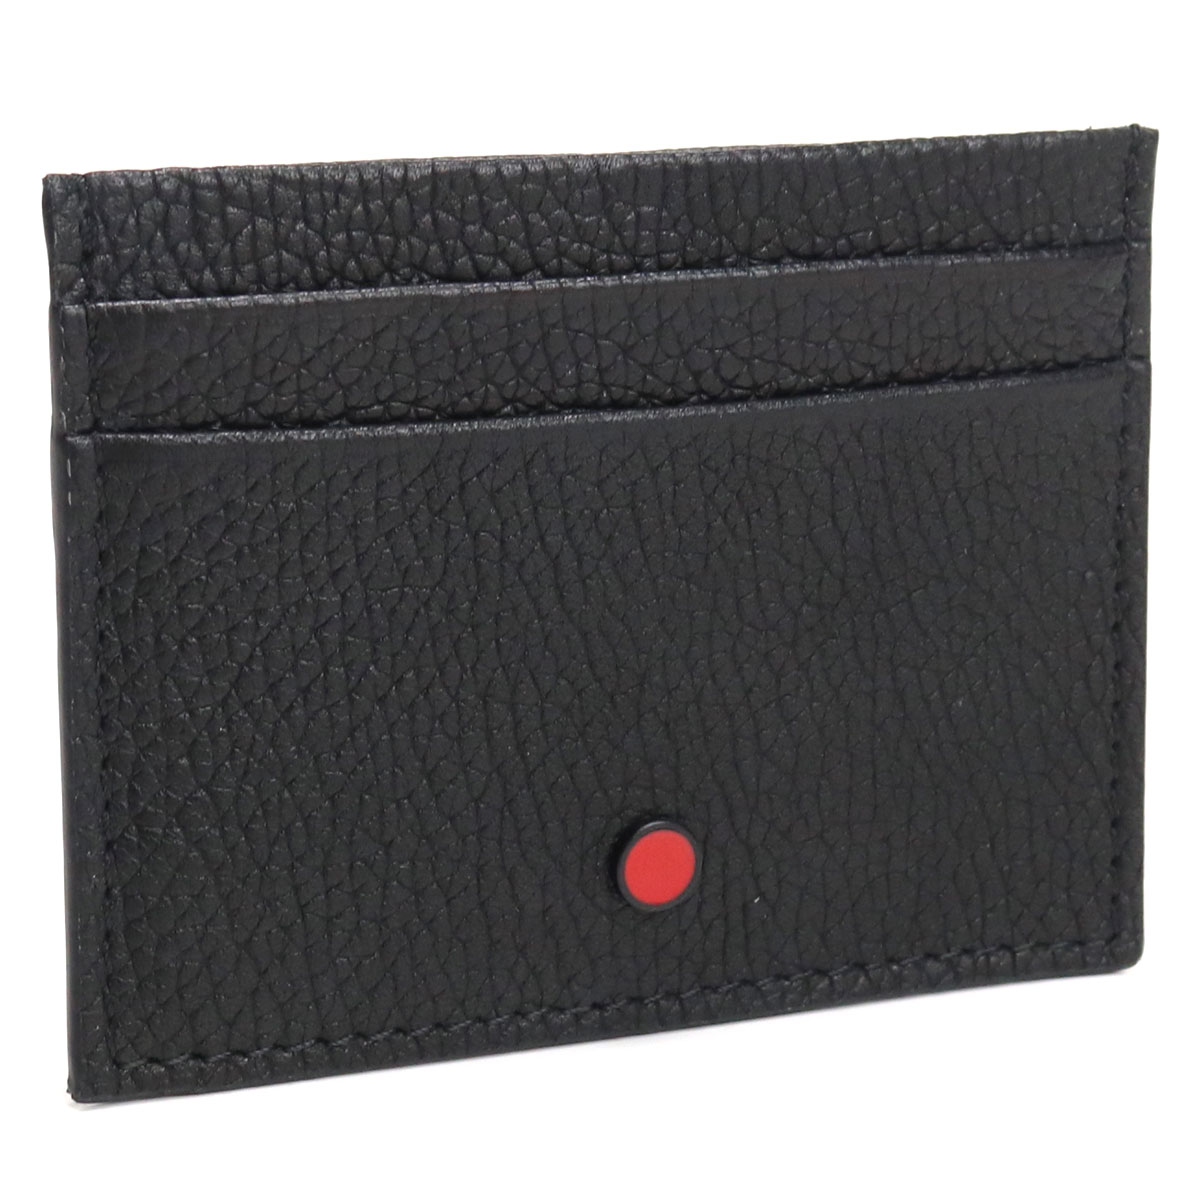 【均一セール】キートン Kiton ブランド カードケース メンズ UPCARDK N00845-01 BLACK ブラック gsm-3 luxu-01 ギフト fl07-sale